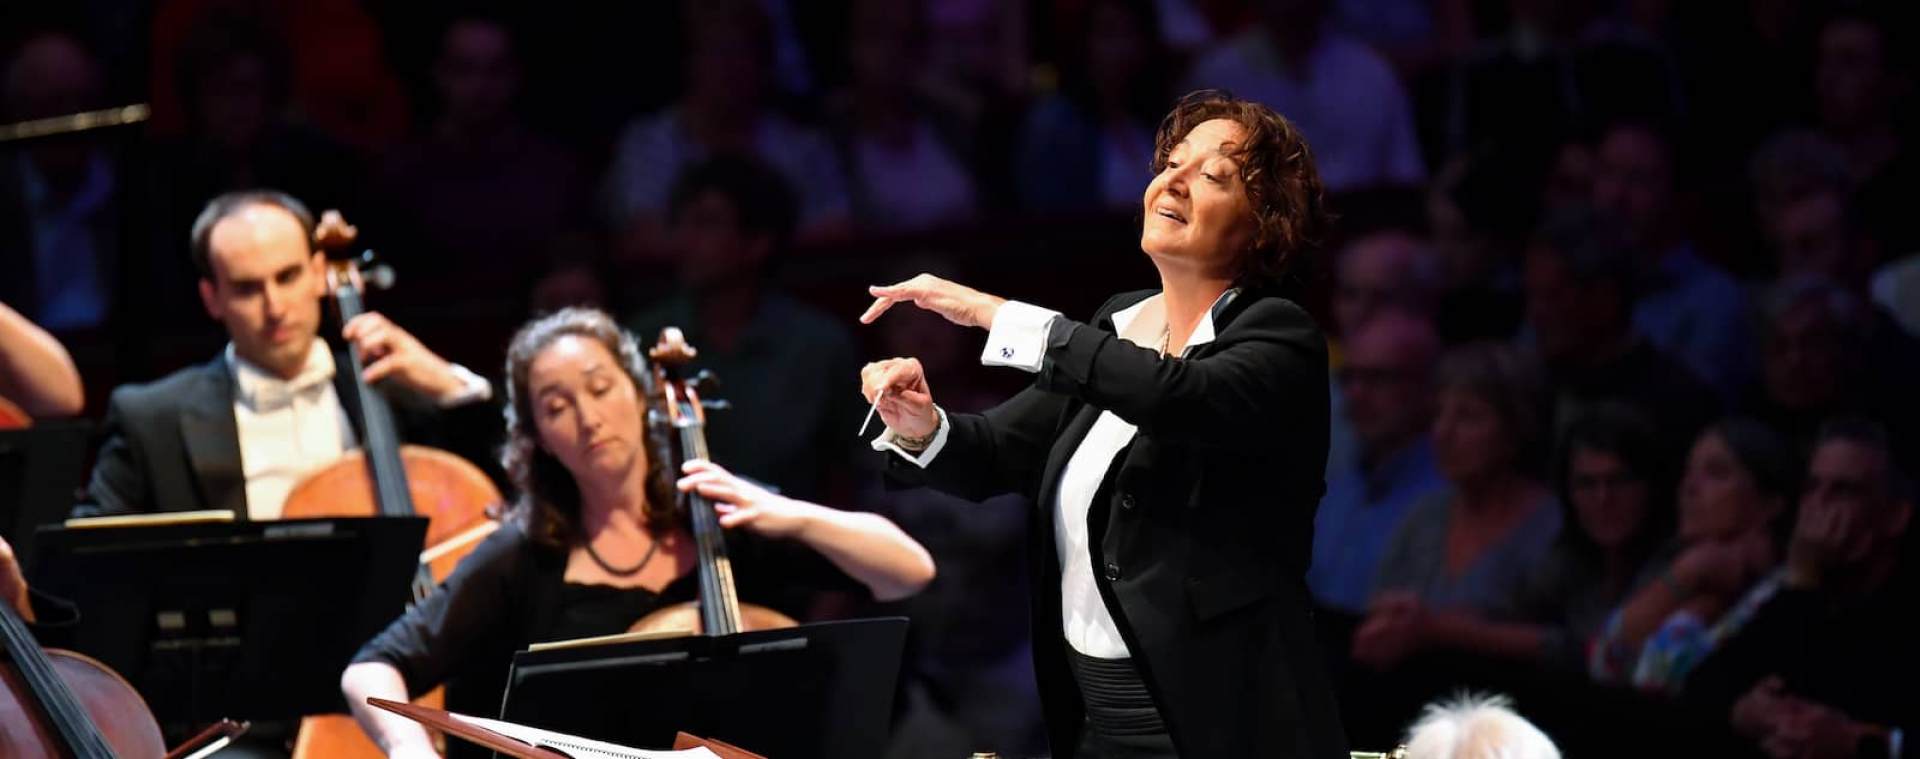 Orchestre de Paris, Nathalie Stutzmann